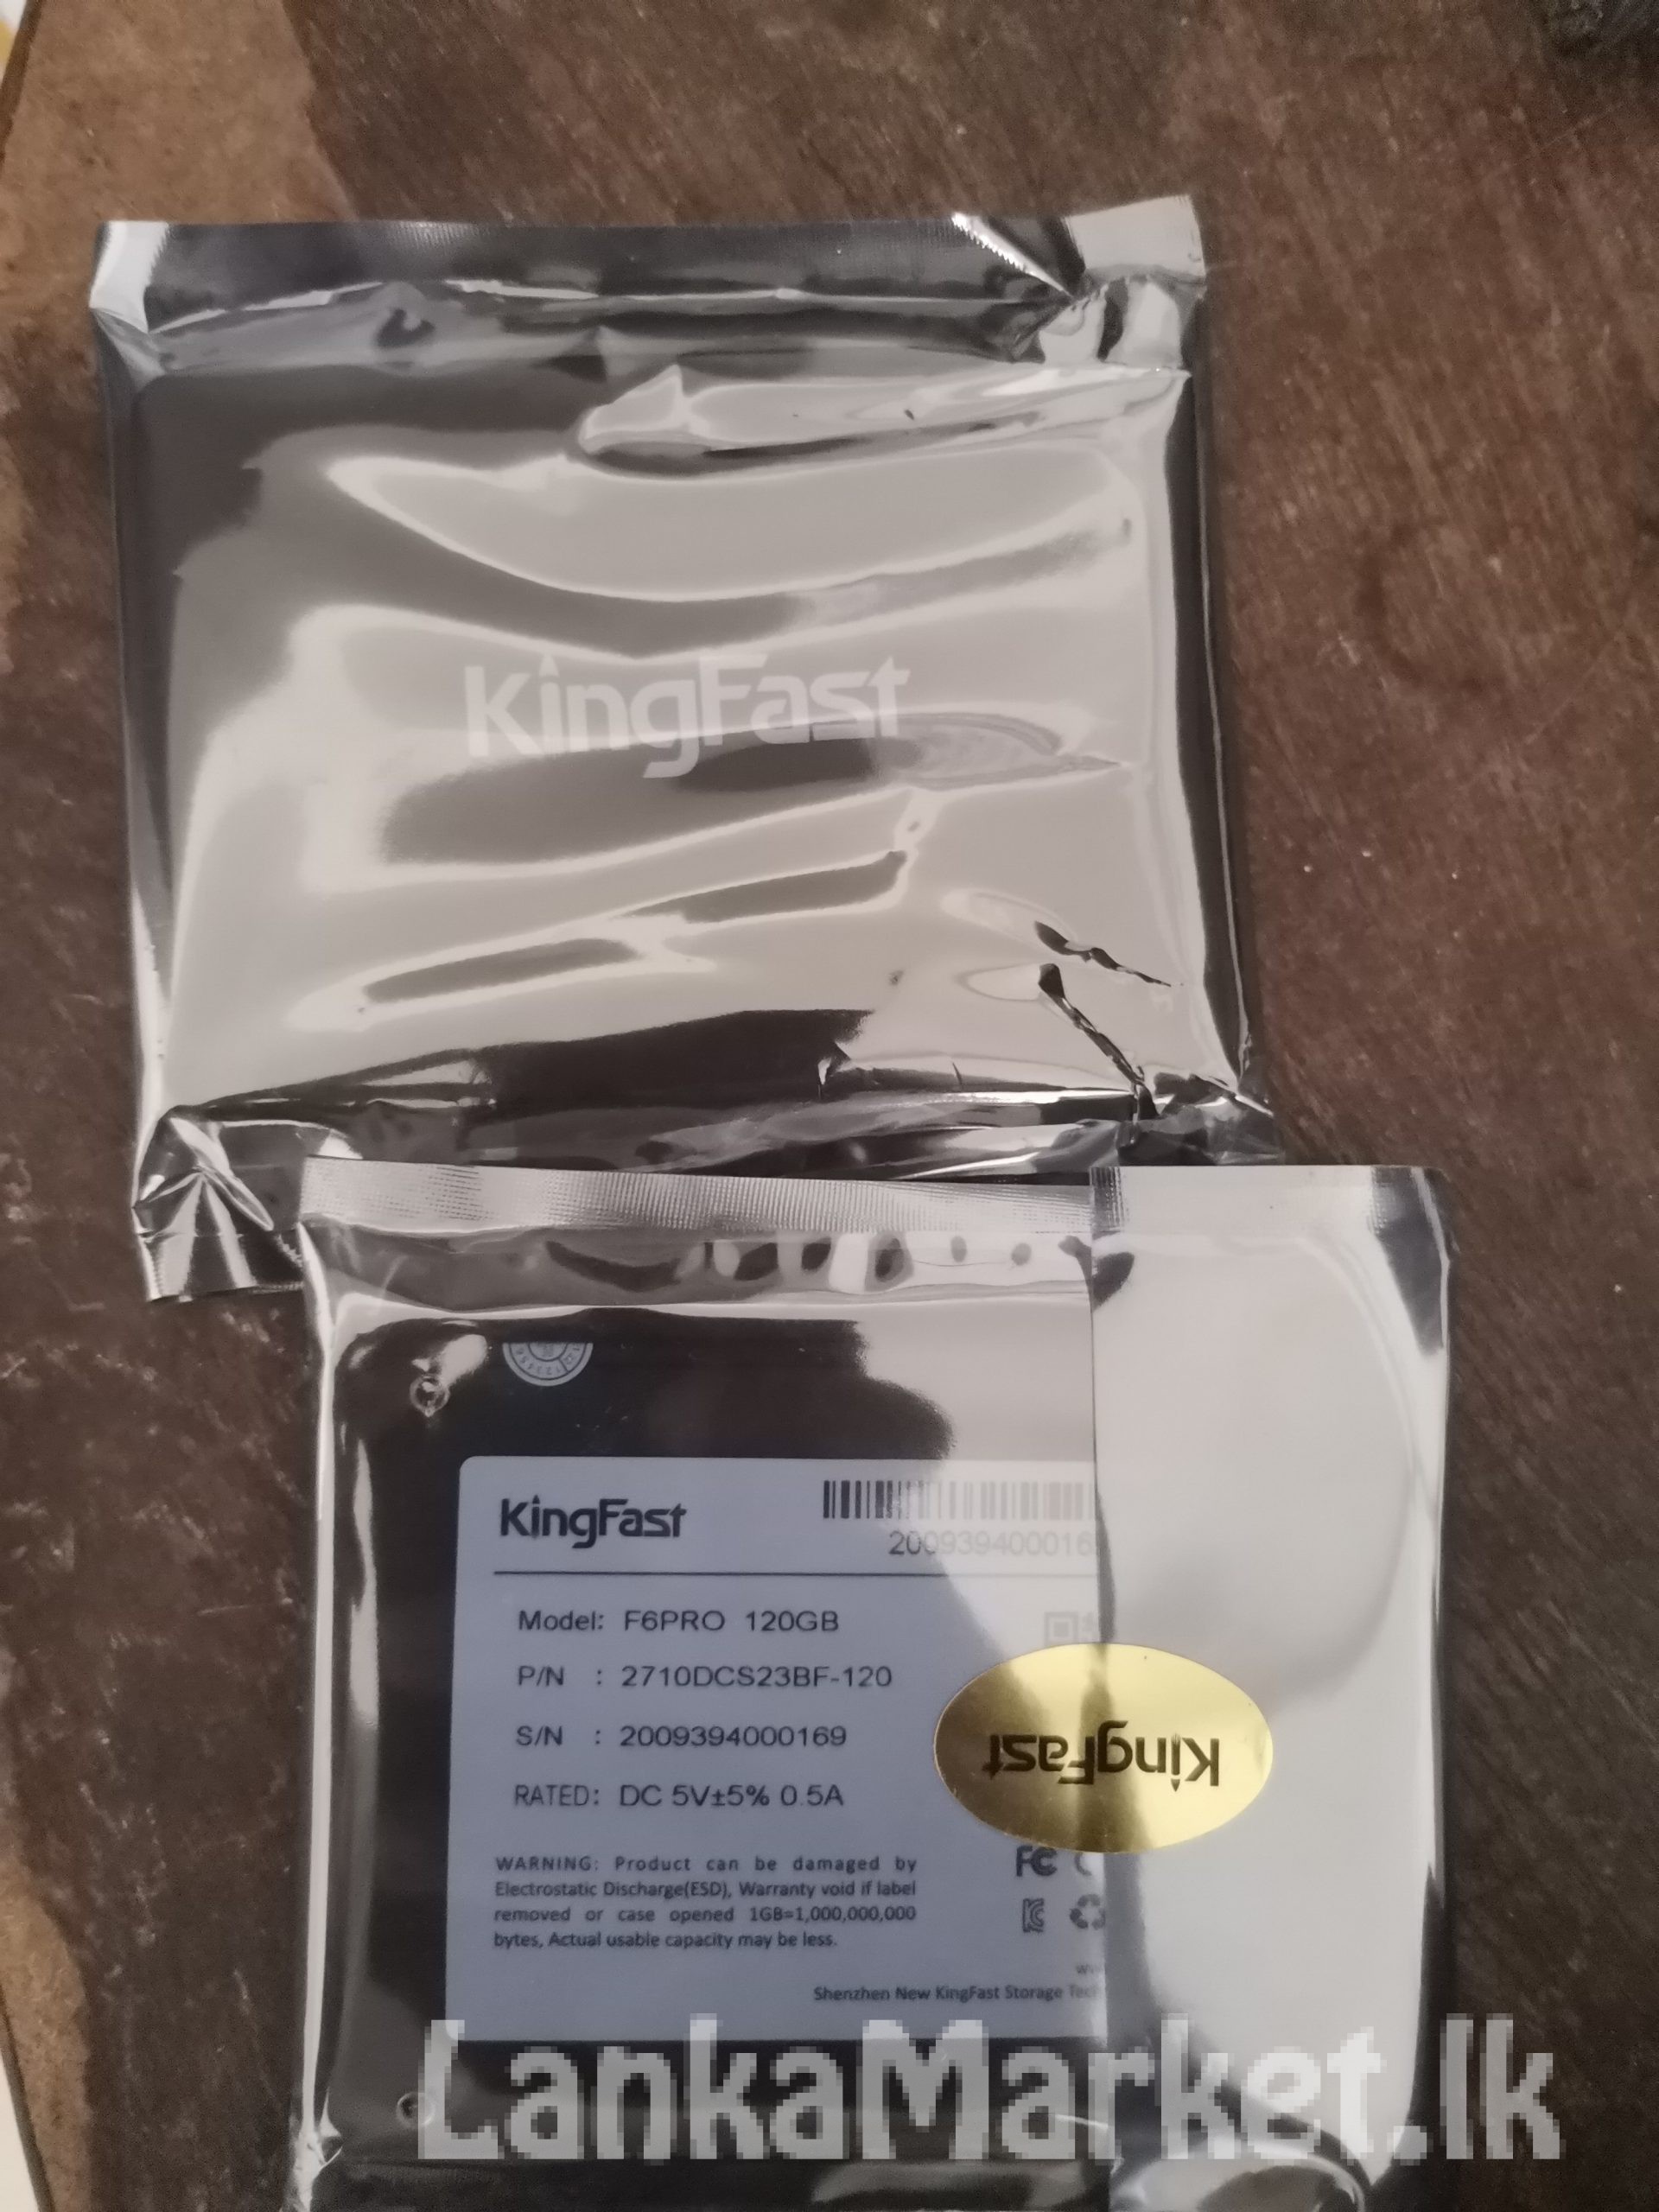 120GB Brand New KingFast SSD